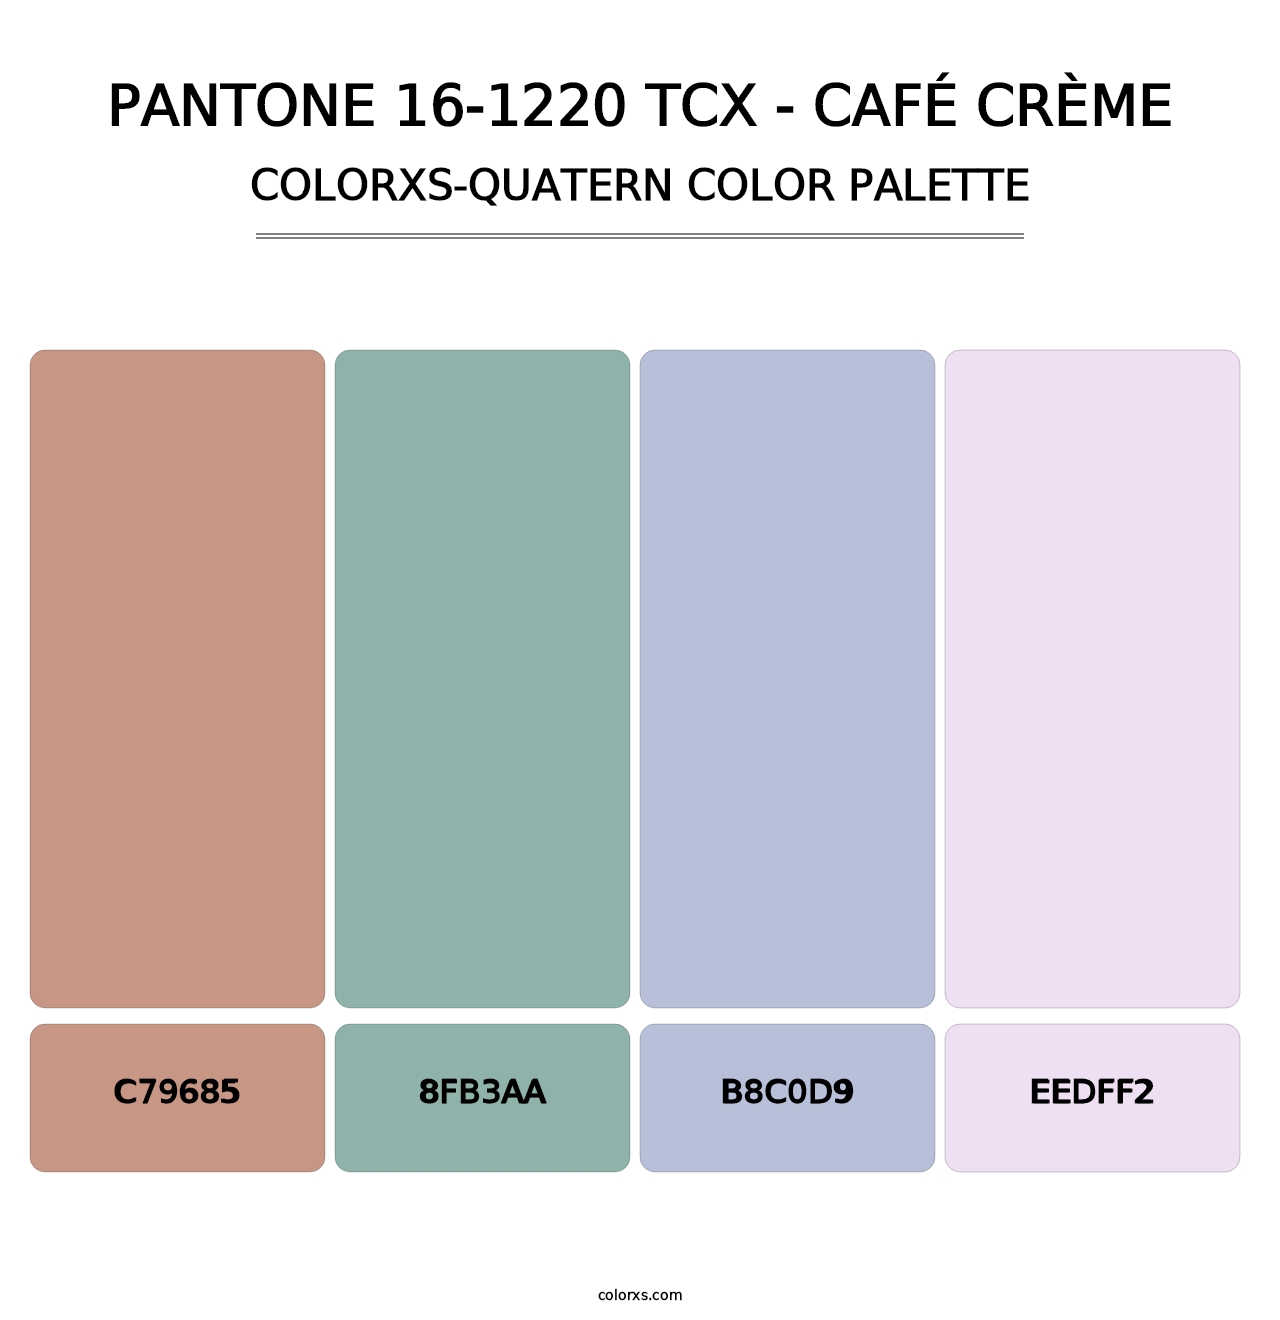 PANTONE 16-1220 TCX - Café Crème - Colorxs Quatern Palette